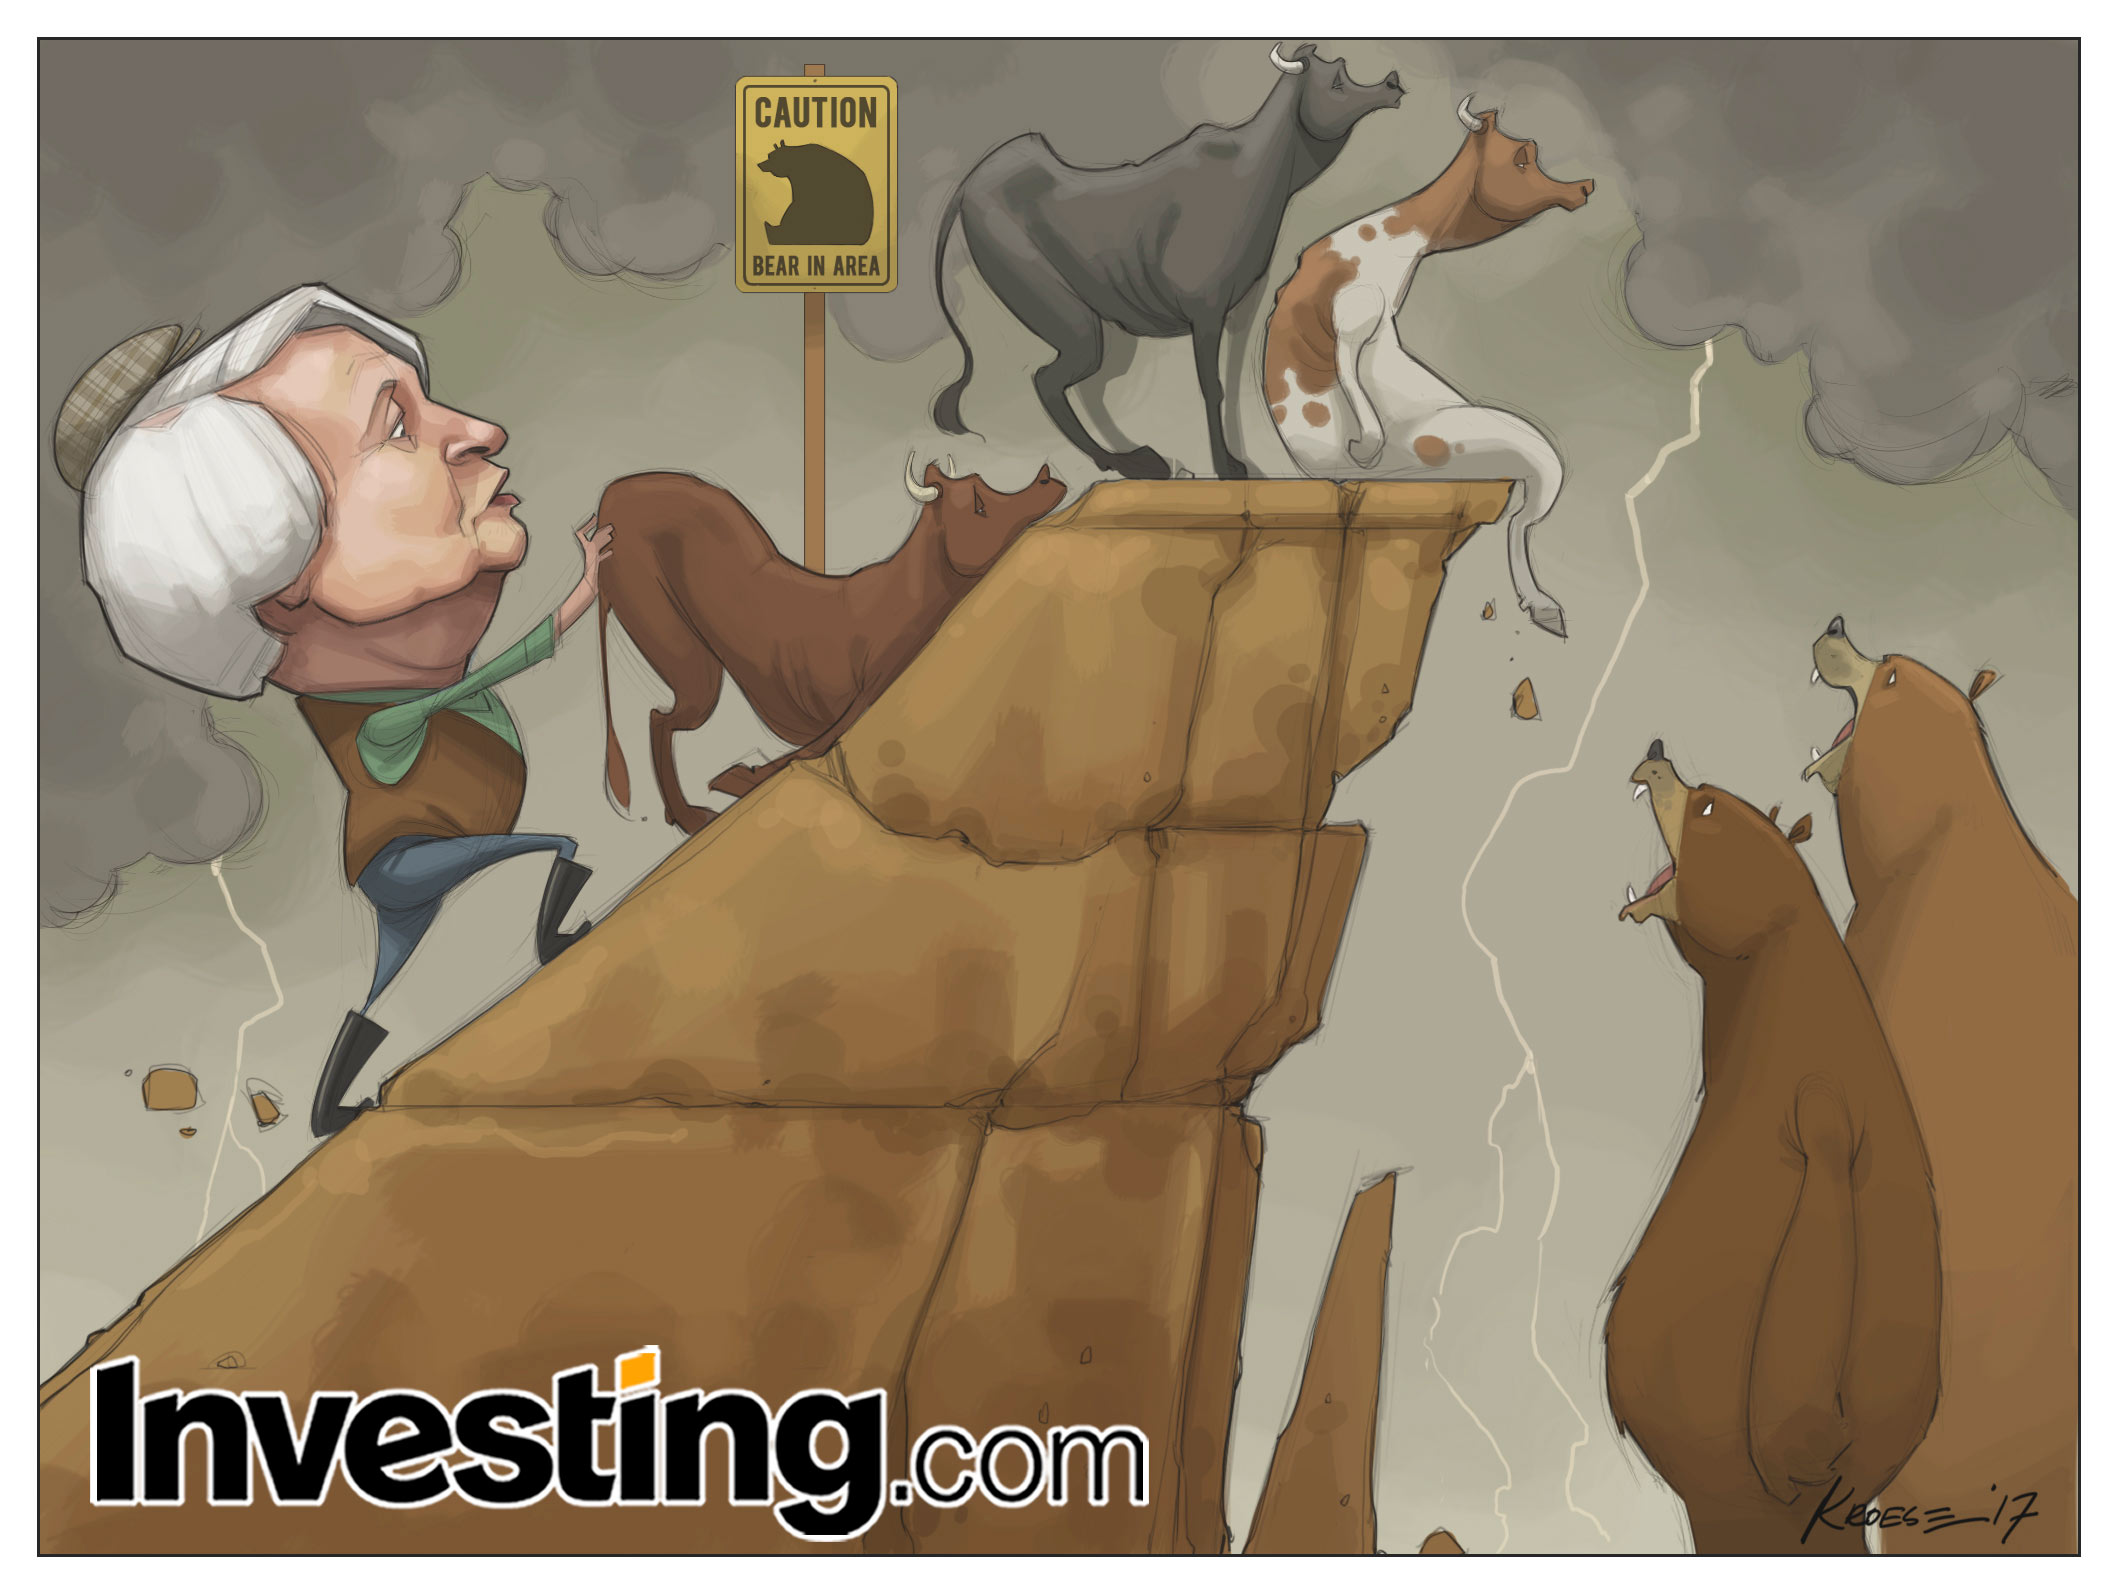 O rali do mercado finalmente mostra algumas rachaduras como Yellen e o cansaço dos touros